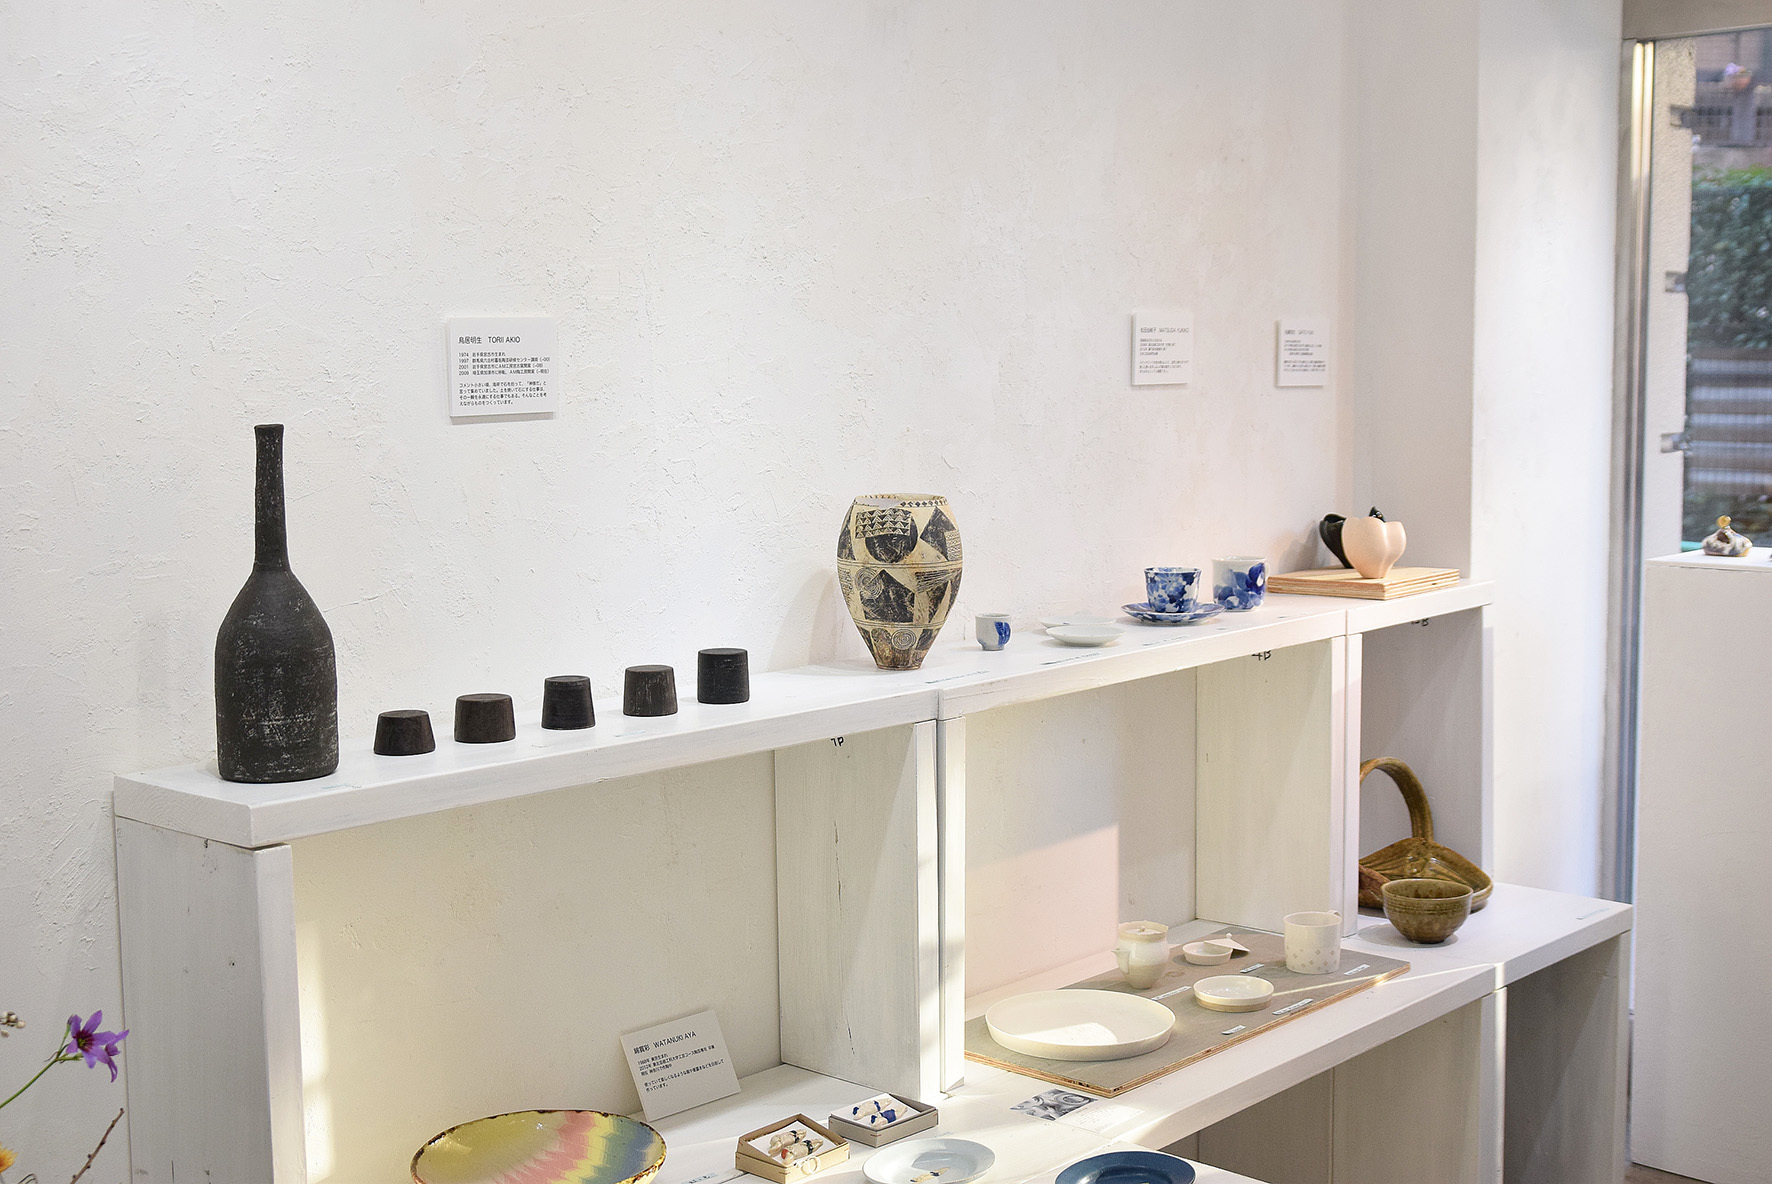  やうやう展 The 1st Ceramics Exhibition of Lab. Graduates,TUAD. 2018.12.12(水)~12.17(月) @ 最終日_e0272050_19580552.jpg